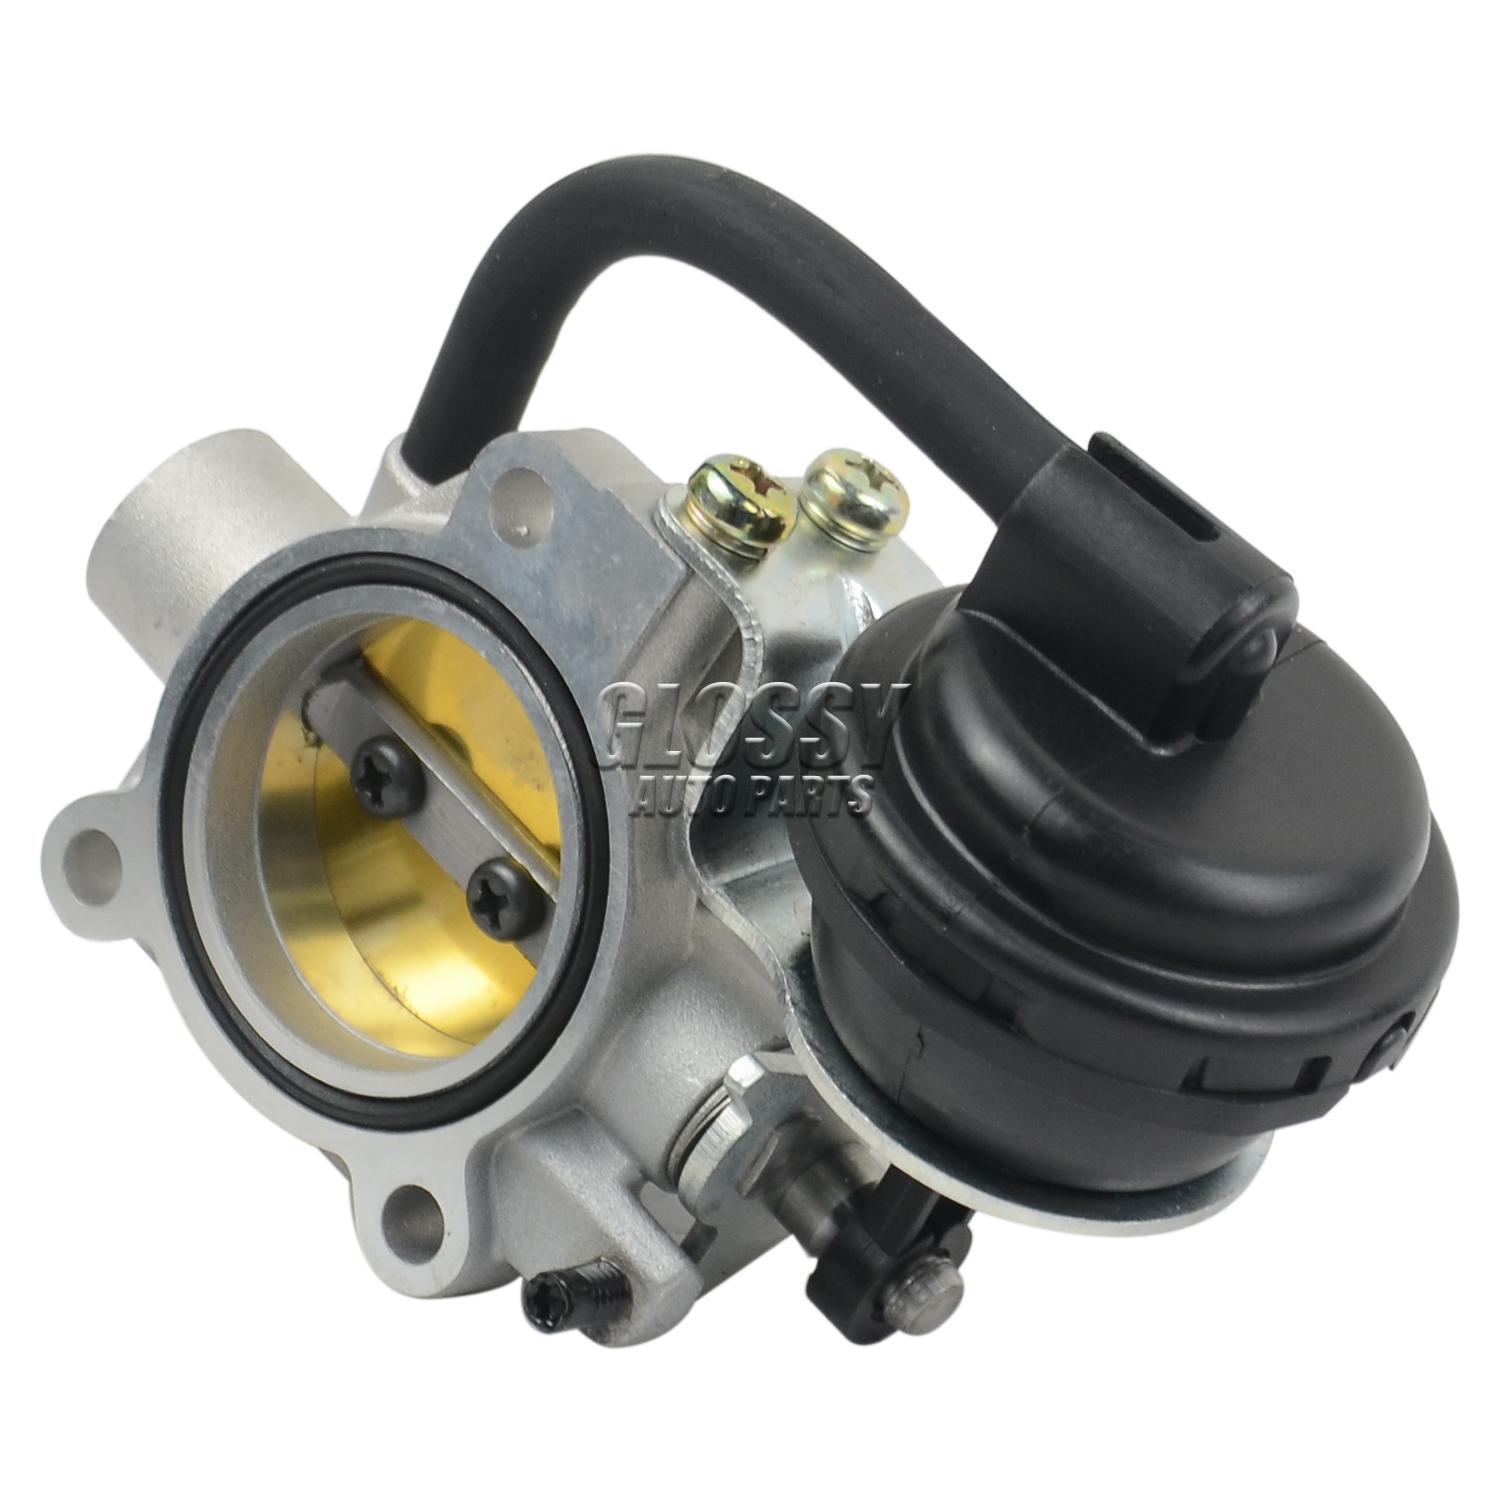 Ap03 kompressor bypass ventil til 02-08 mini cooper s  r52 r53 w11 b 16a motor 1.6l 11611501937 11614543535